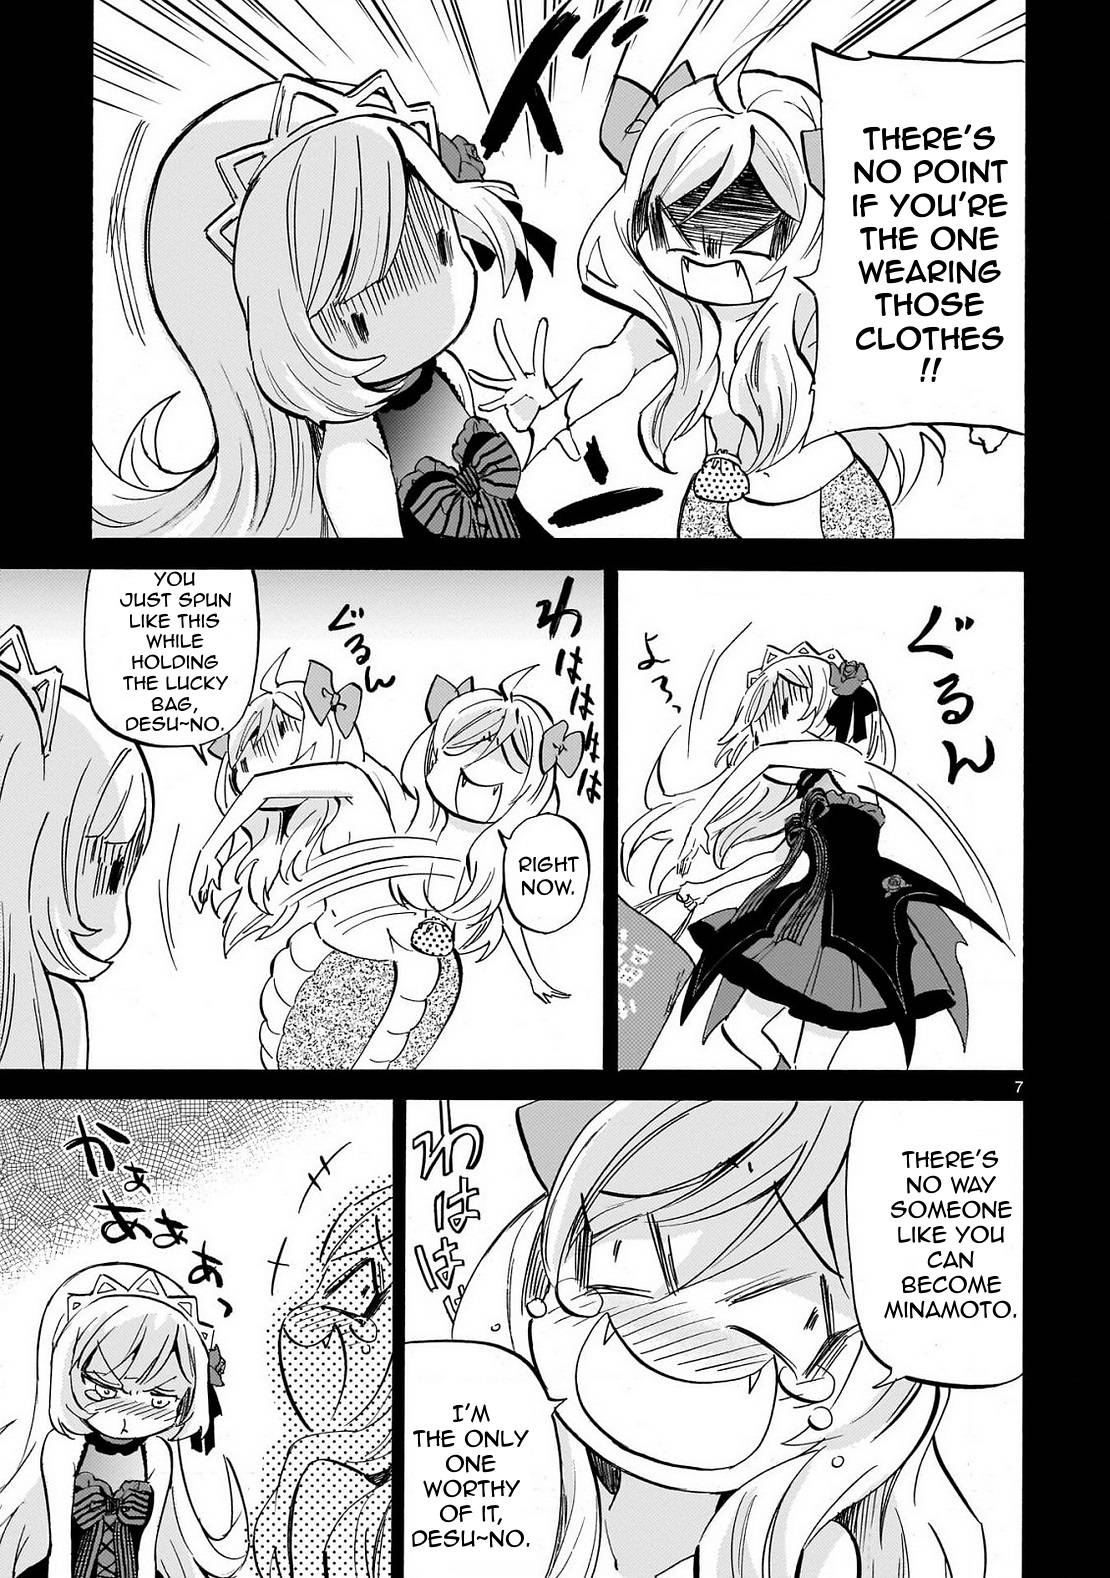 Jashin-chan Dropkick chapter 231 page 7